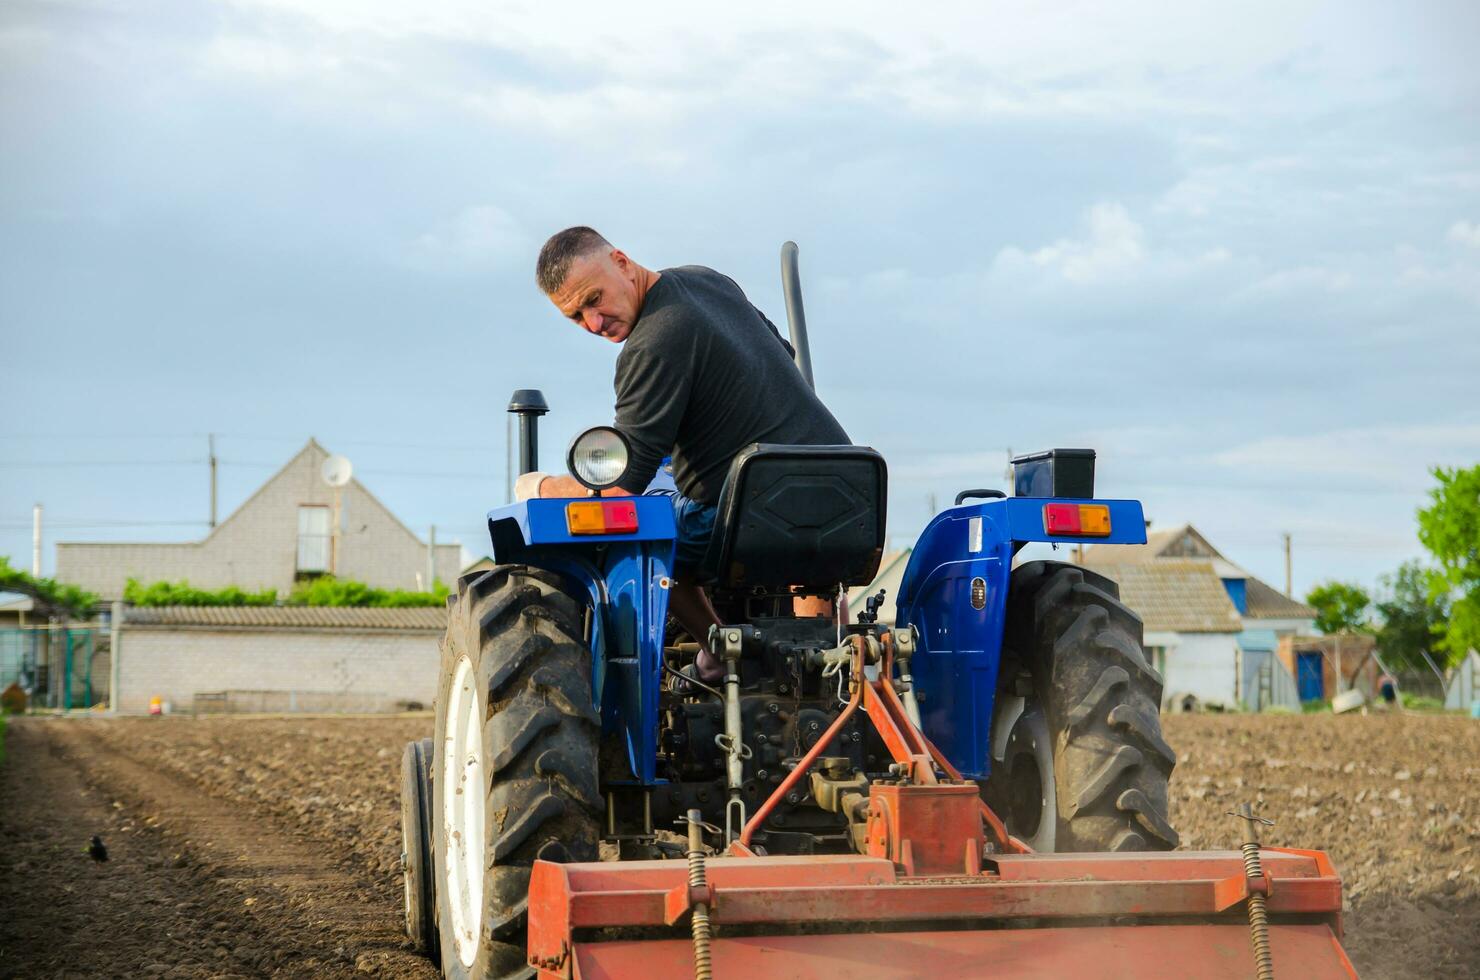 kherson oblast, Ucrânia - pode 29, 2021 uma agricultor em uma trator limpa a campo depois de colheita. preparação do terra para futuro plantio Novo cortar. moagem solo, afrouxamento terra antes corte linhas foto